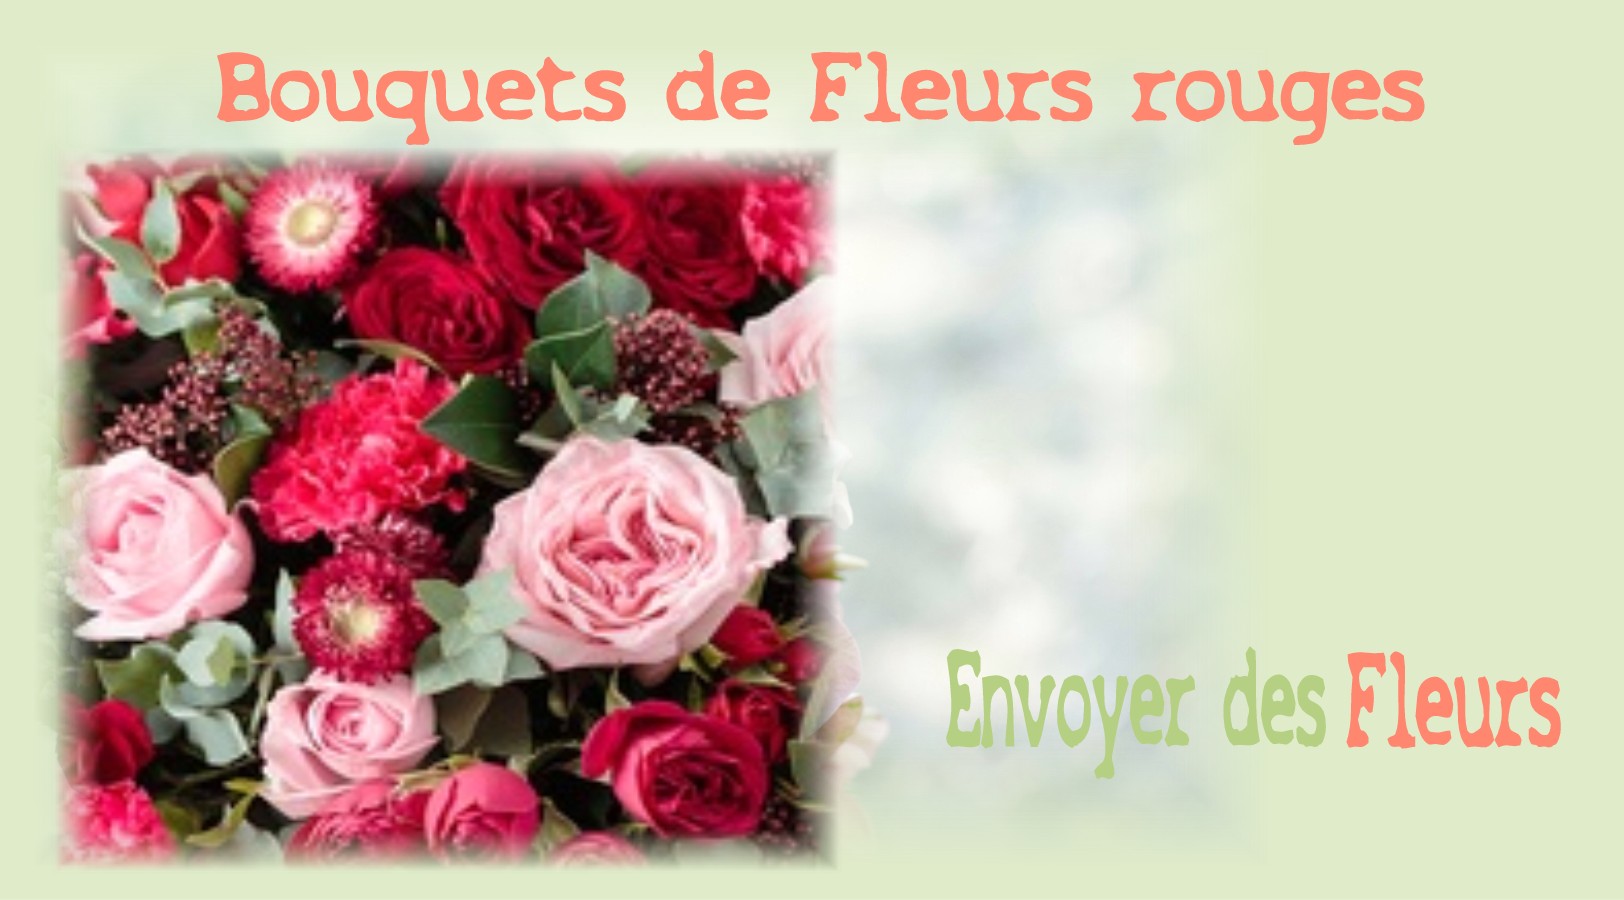 BOUQUETS DE FLEURS ROUGES - FLEURISTE MONTPELLIER (34) - ENVOYER DES FLEURS